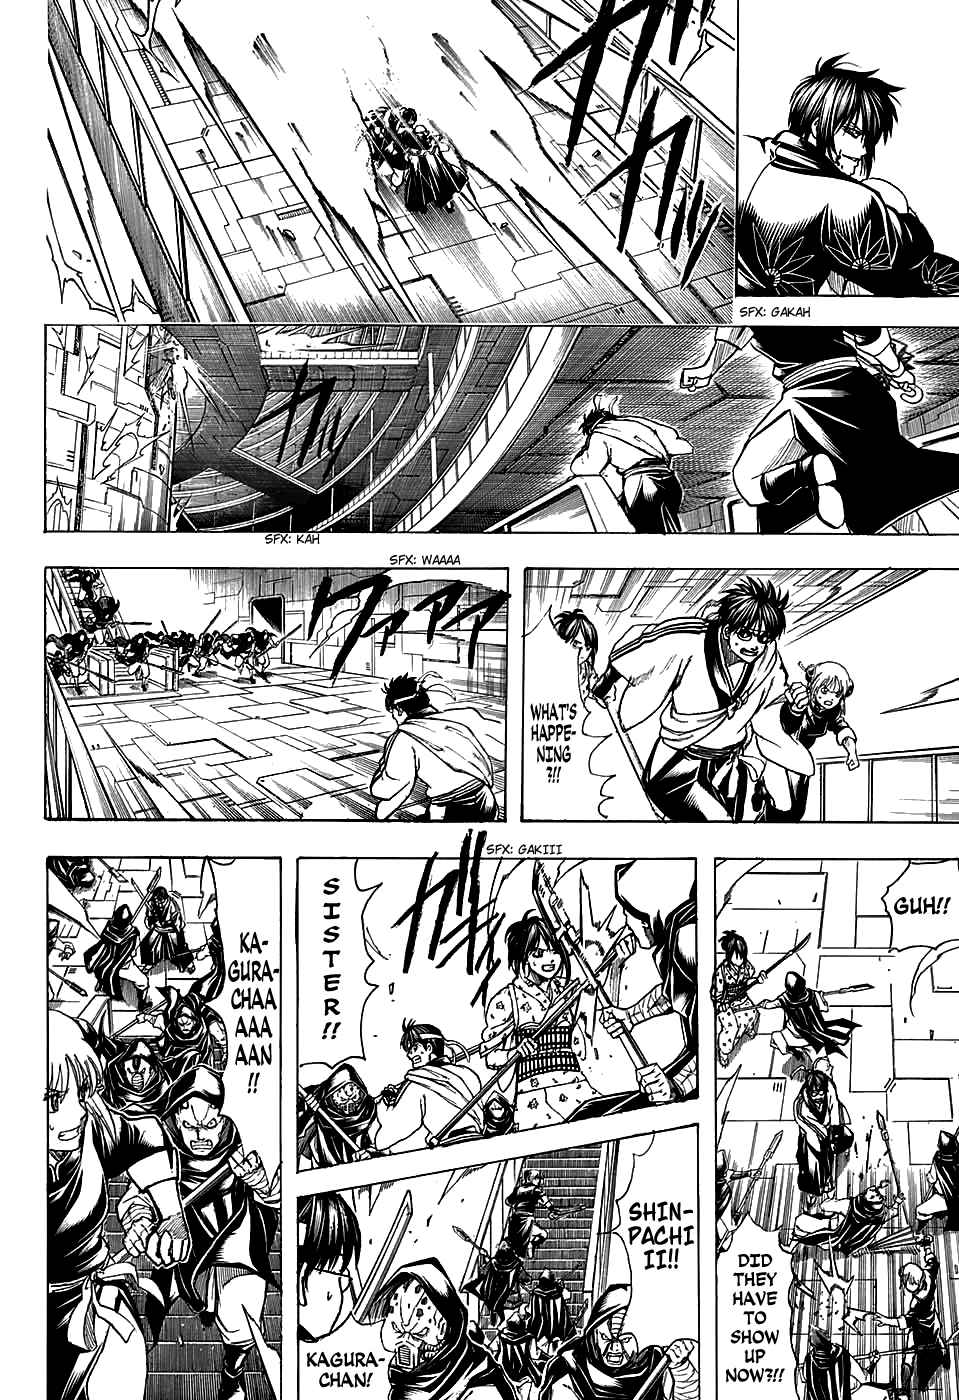 Gintama Vol. 77 Ch. 700 Steel Heart